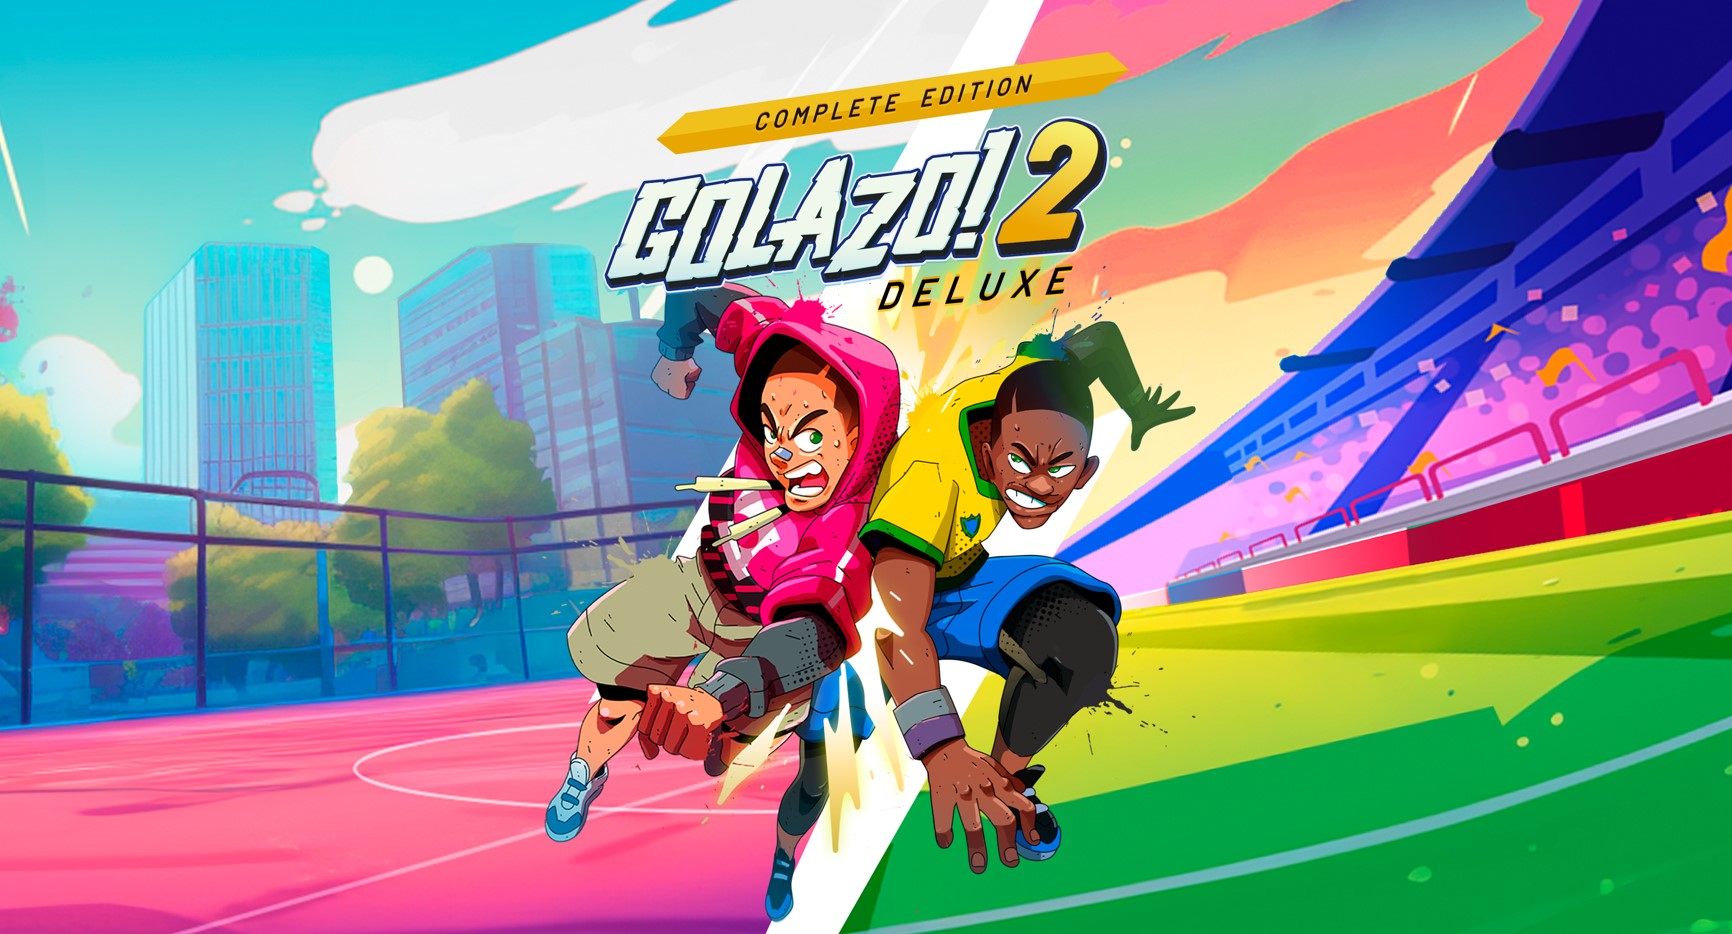 Golazo! 2 Deluxe – Complete Edition ya está a la venta para Nintendo Switch y PlayStation 5